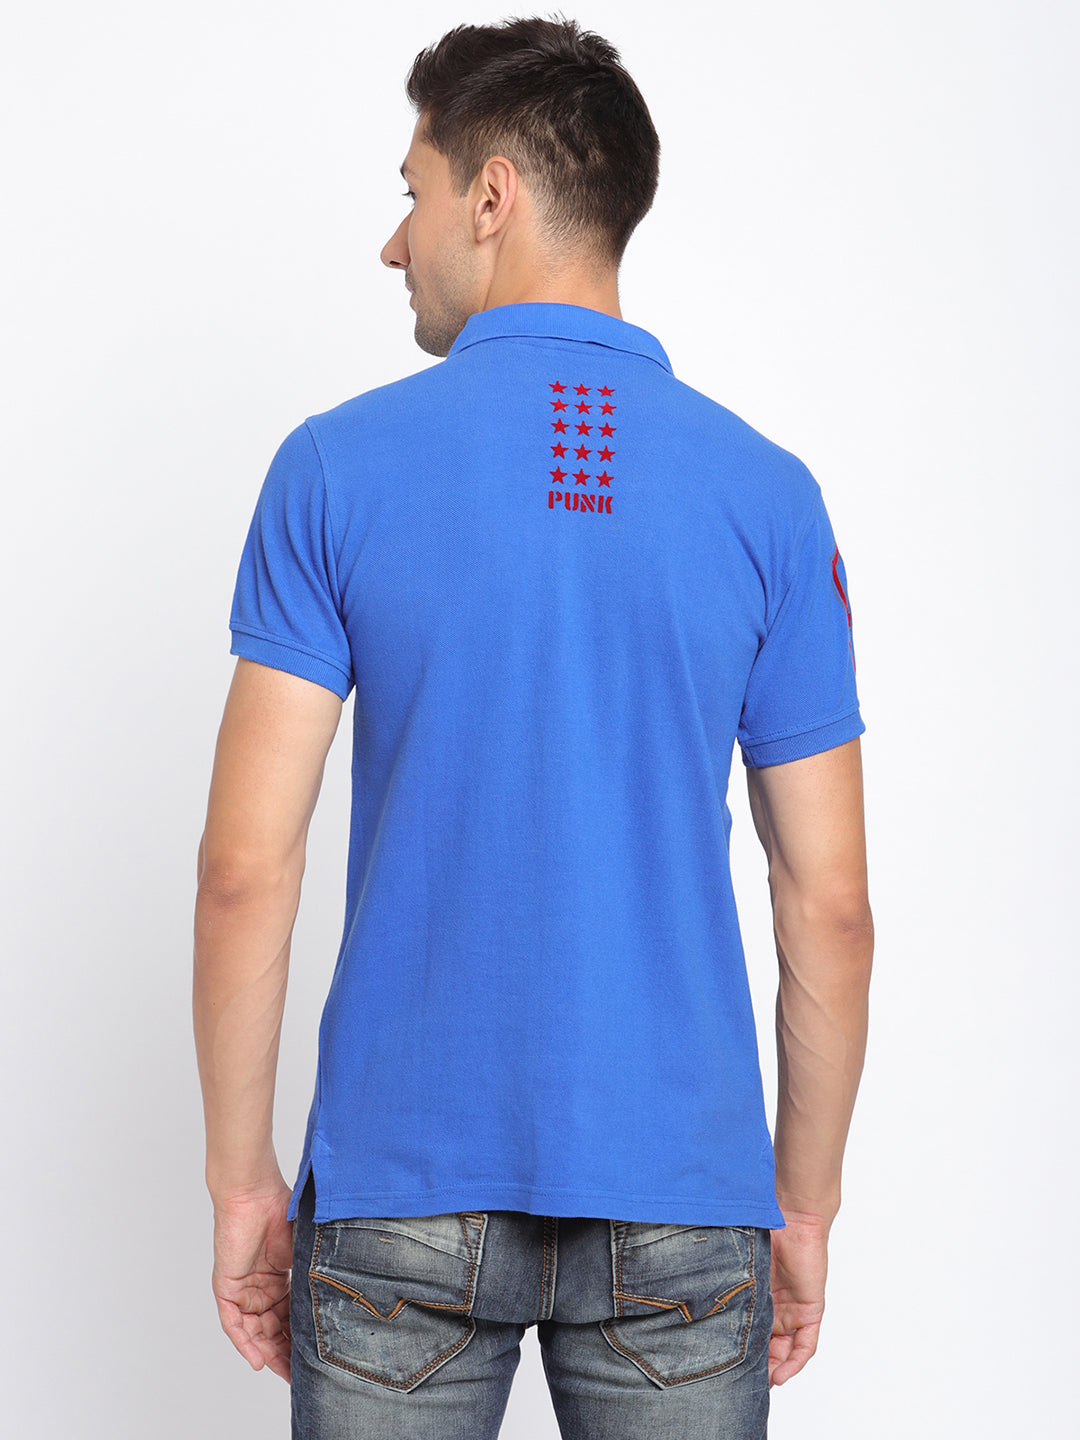 Punk Polo Blue T-Shirt